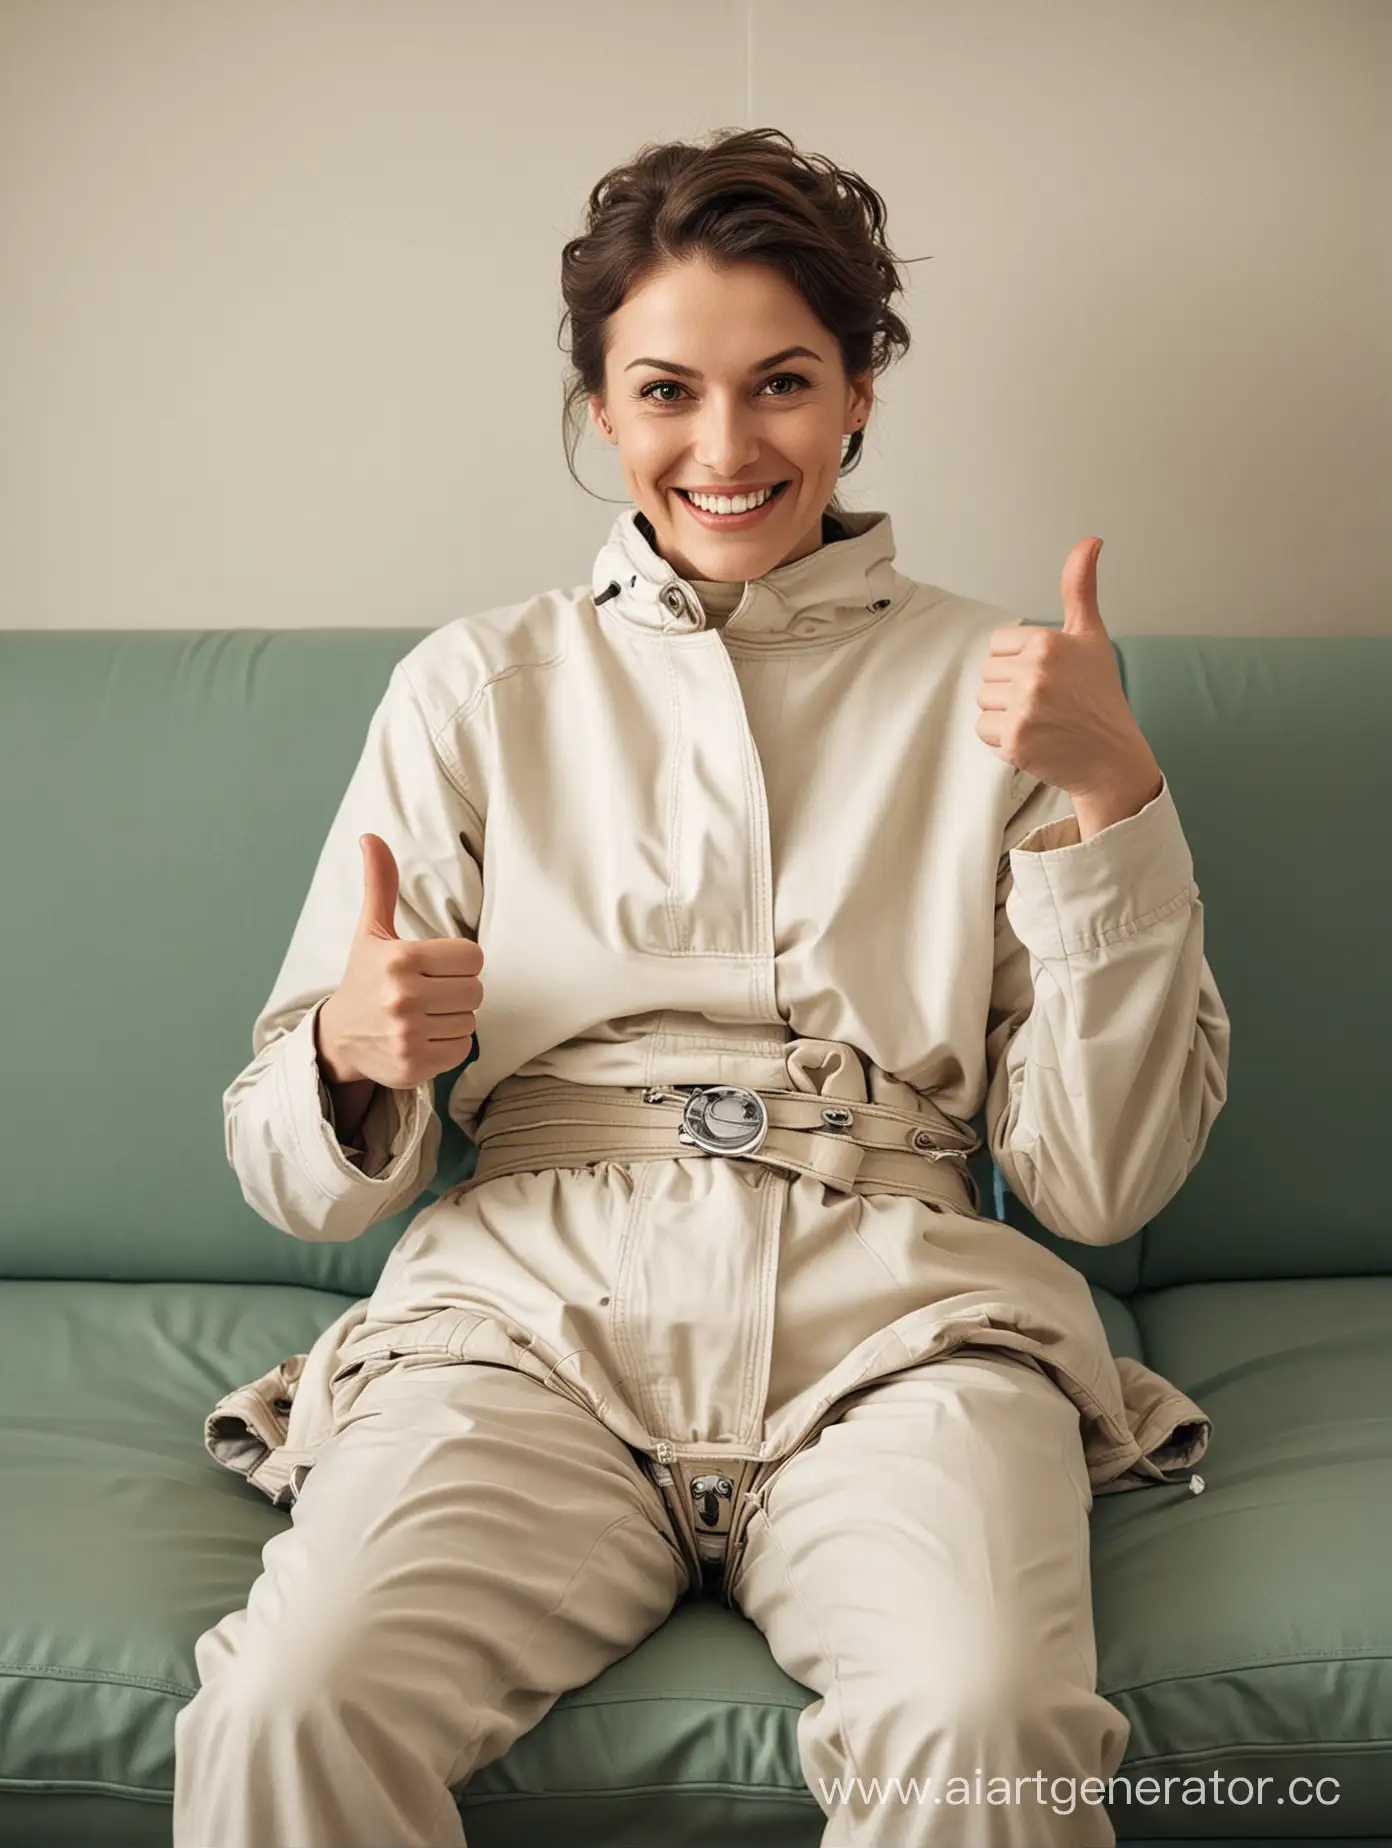 пациент улыбается после лоботомии в кабинете врача лежа на кушетке в смирительной рубашке и показывает большой палец вверх